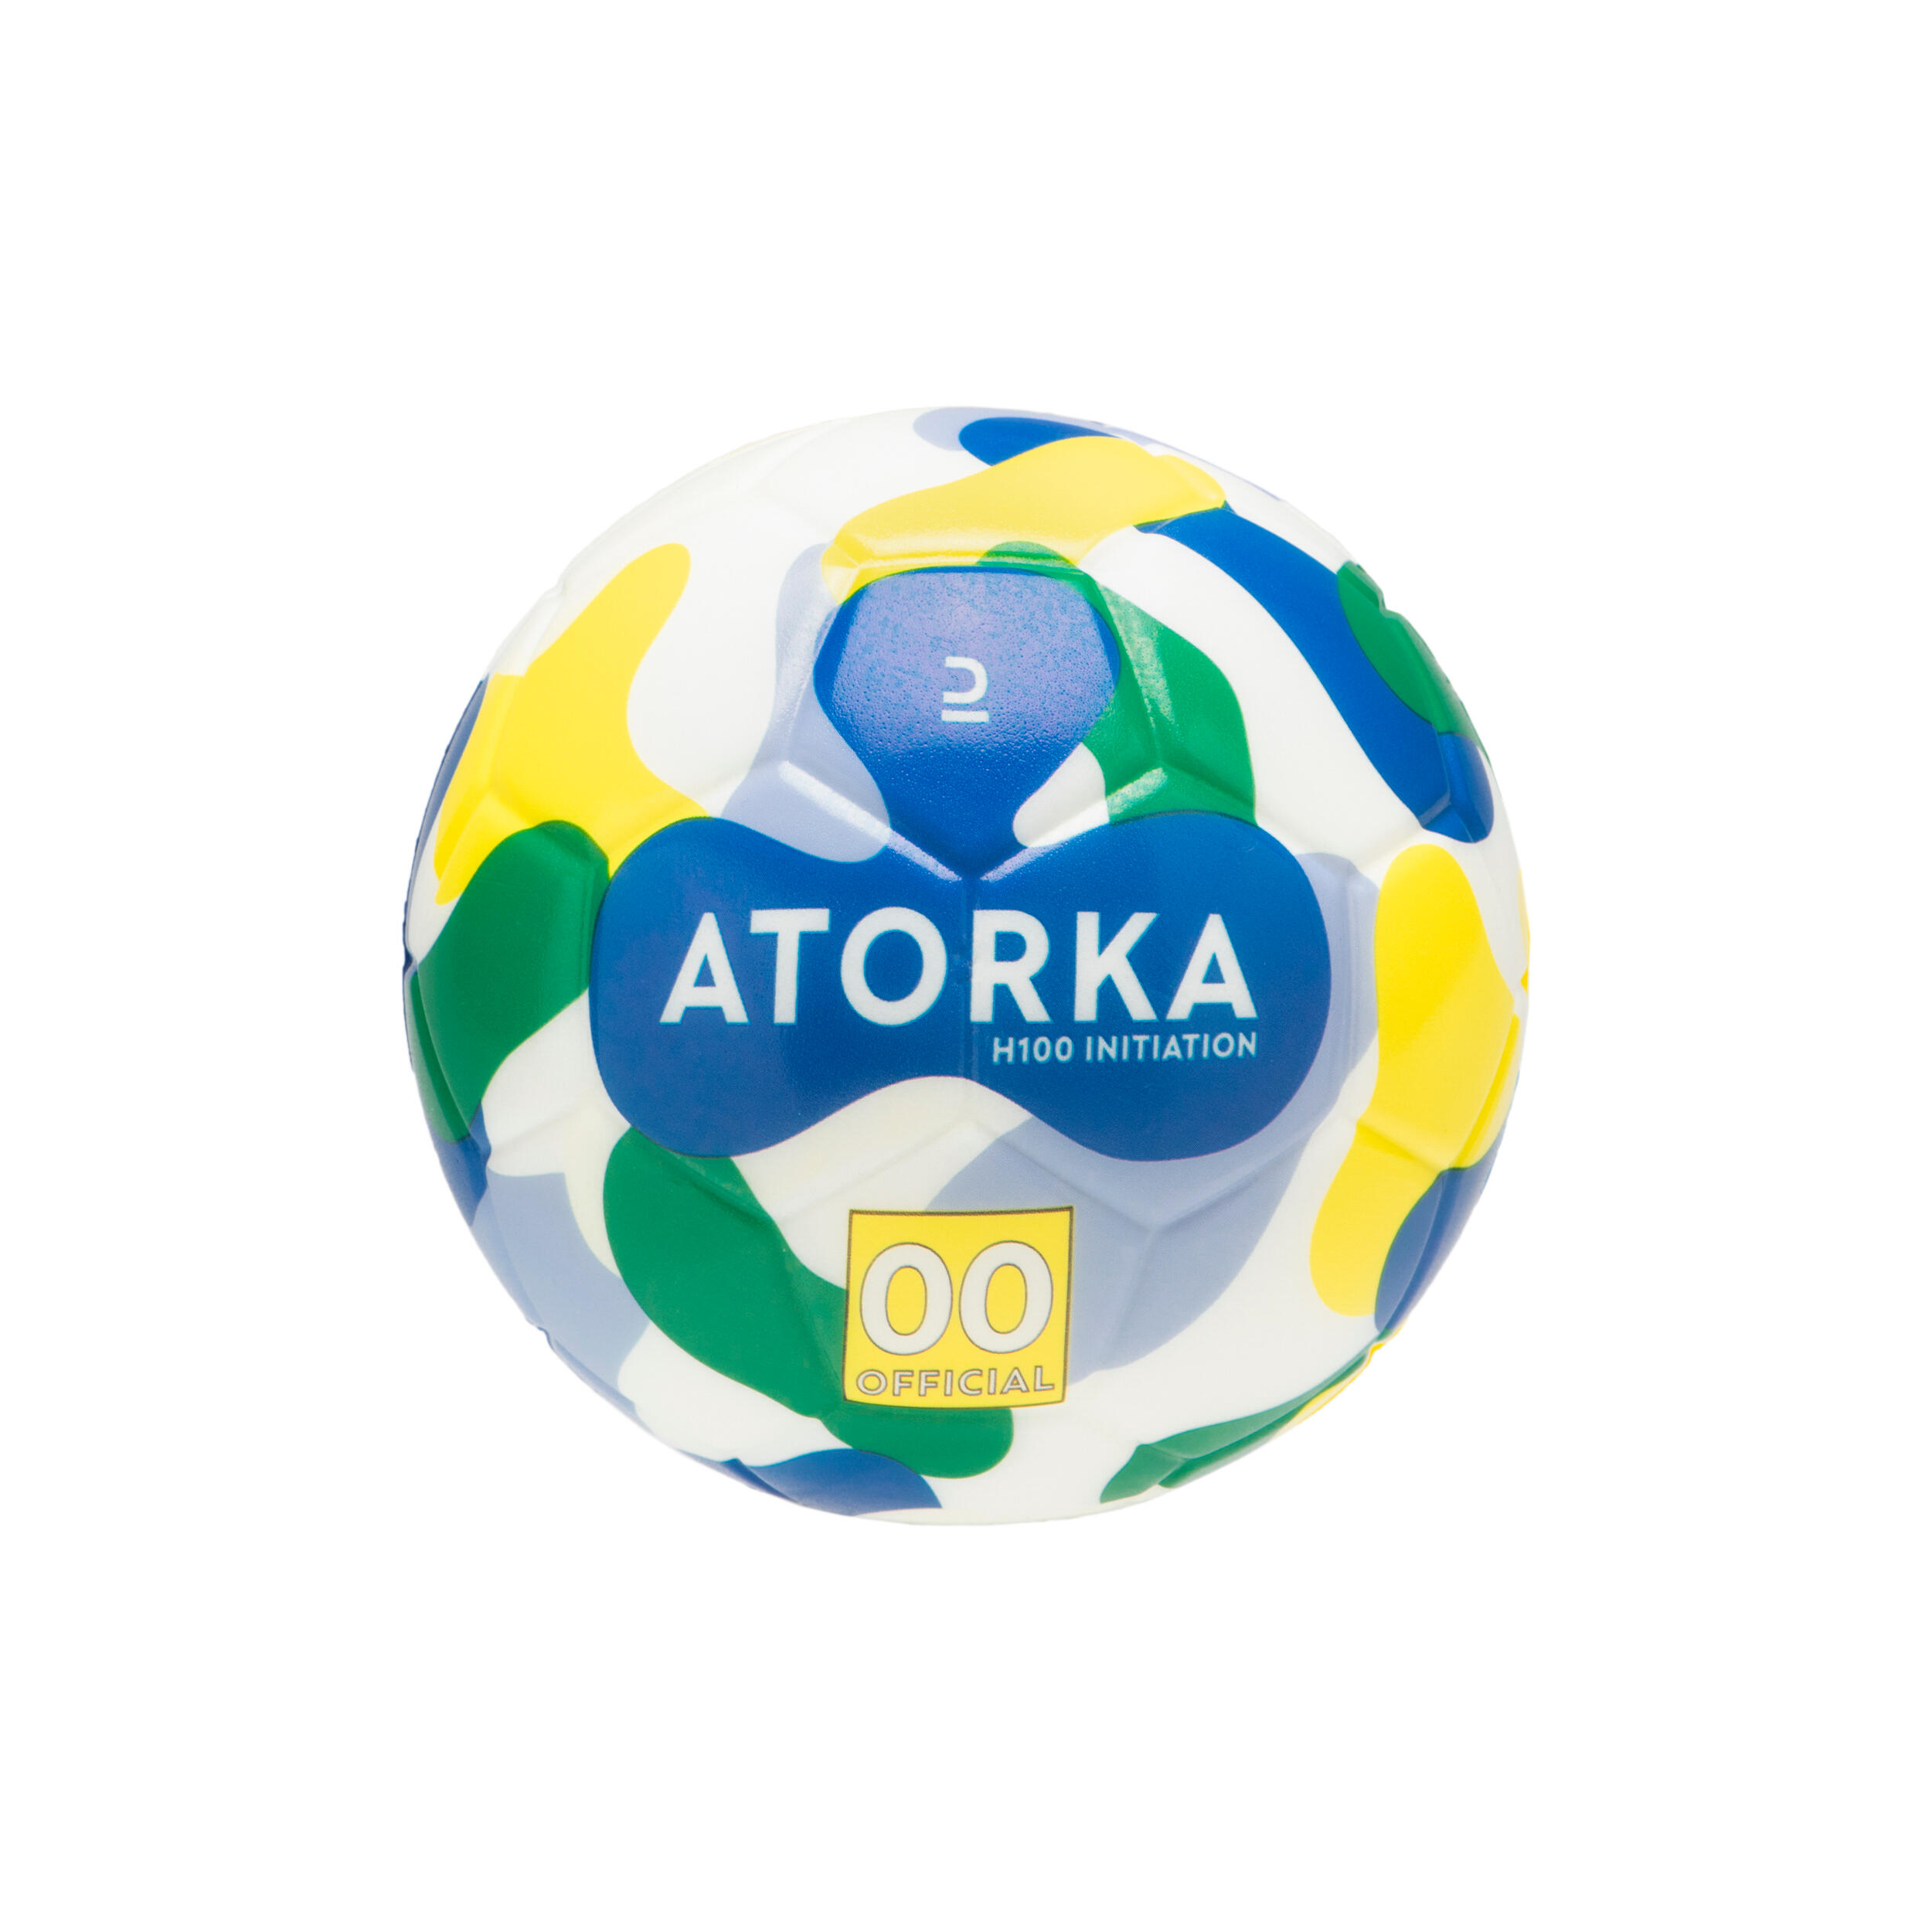 ATORKA Kids' Size 00 Beginner Handball H100 - Blue/Yellow/Green